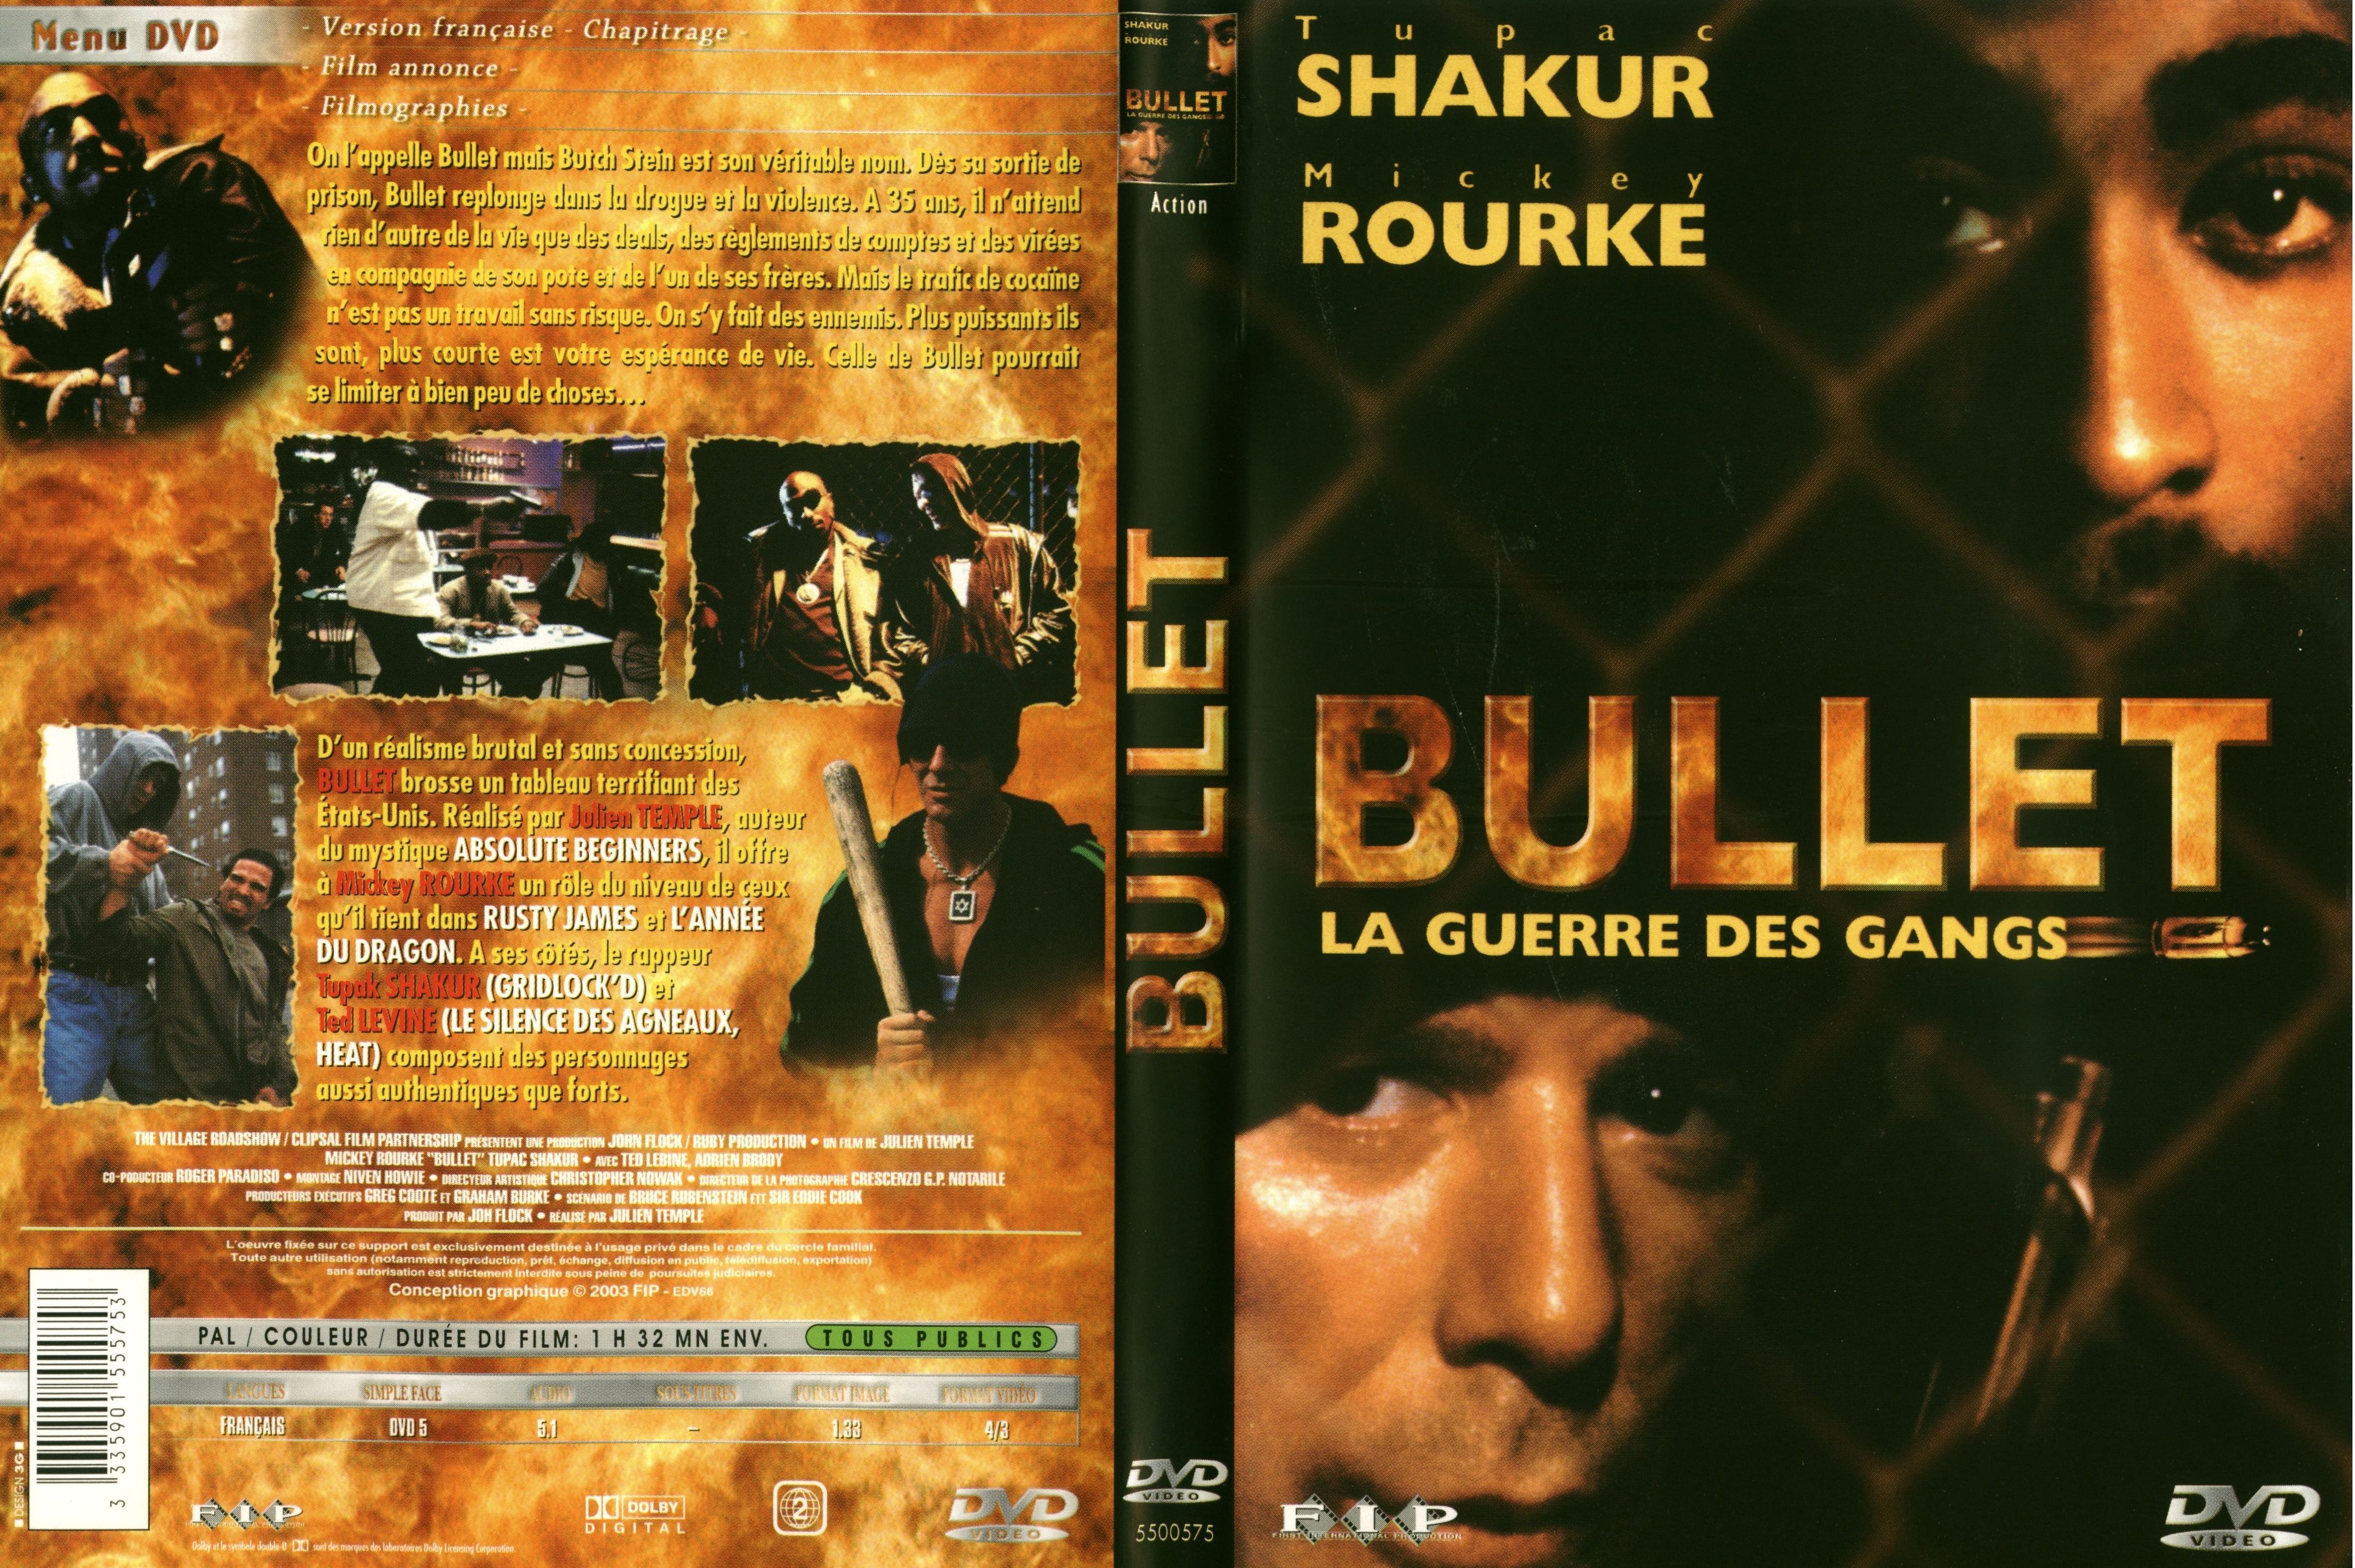 Jaquette DVD Bullet